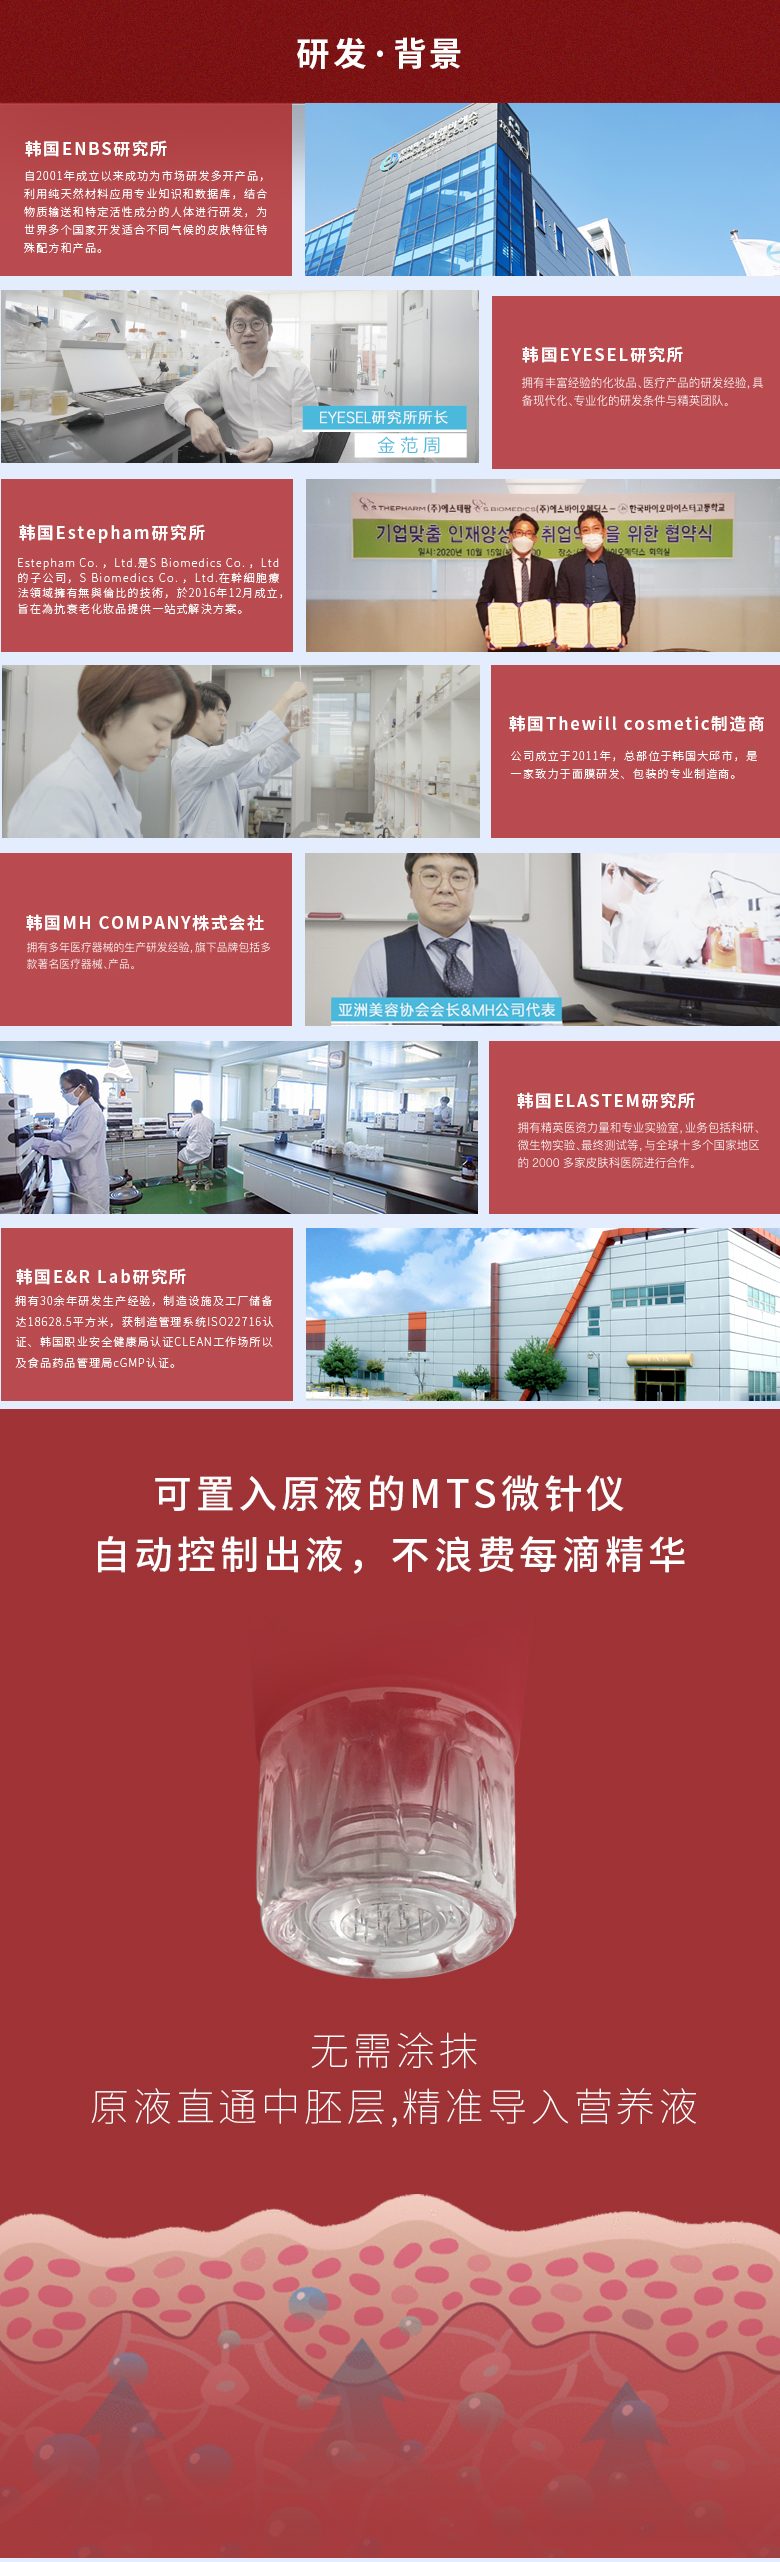 Therapeel Xiu Mu Ning MTS Electric Micro Needle Device: -2